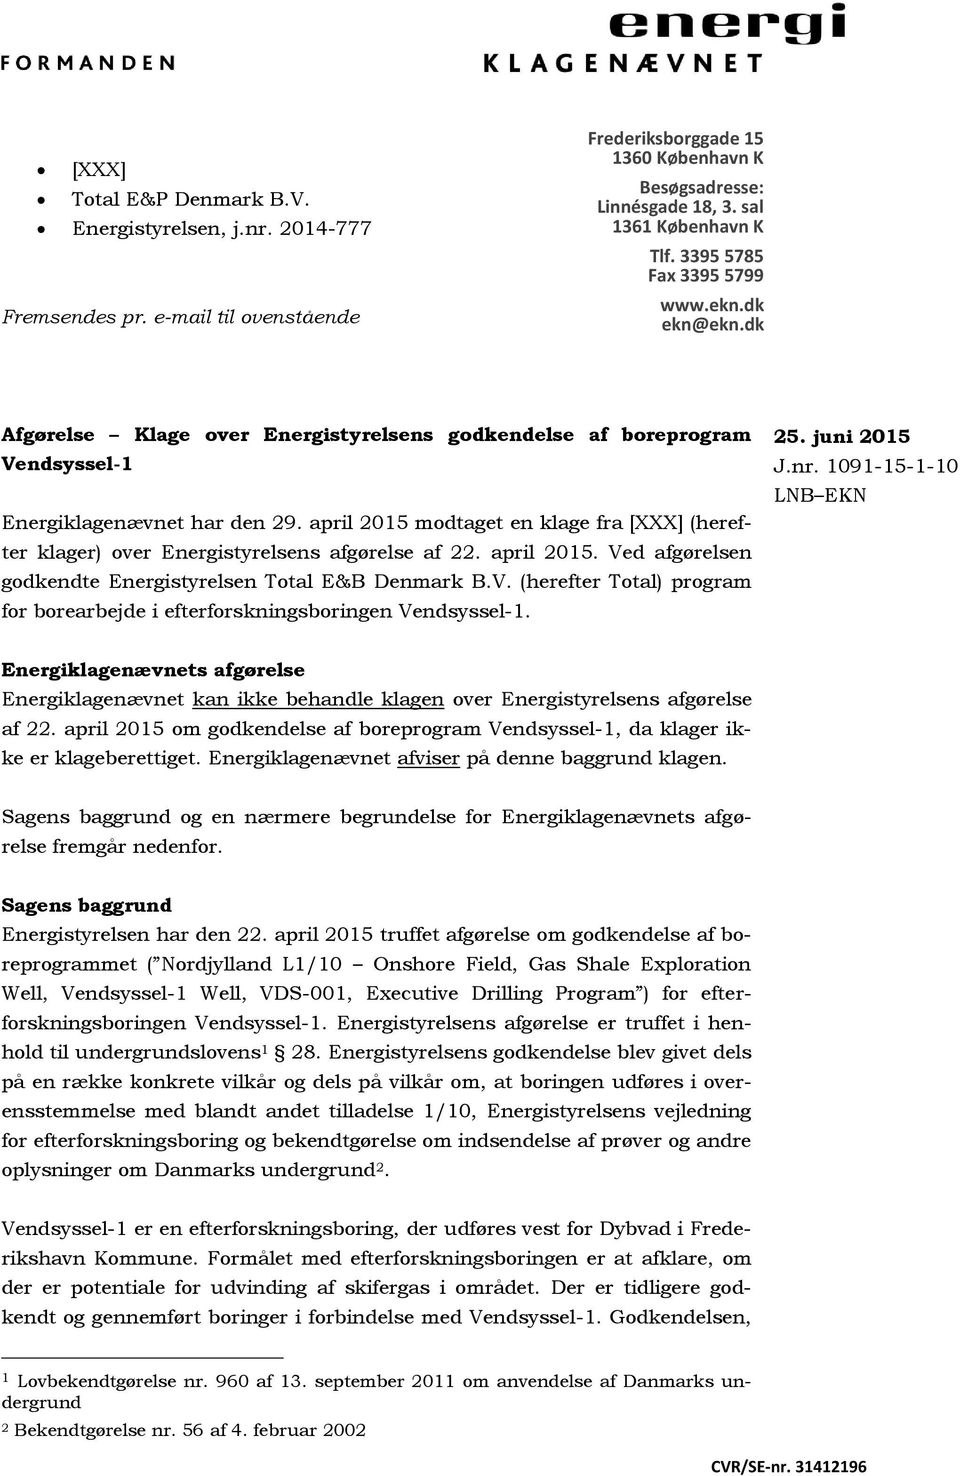 april 2015 modtaget en klage fra [XXX] (herefter klager) over Energistyrelsens afgørelse af 22. april 2015. Ved afgørelsen godkendte Energistyrelsen Total E&B Denmark B.V. (herefter Total) program for borearbejde i efterforskningsboringen Vendsyssel-1.